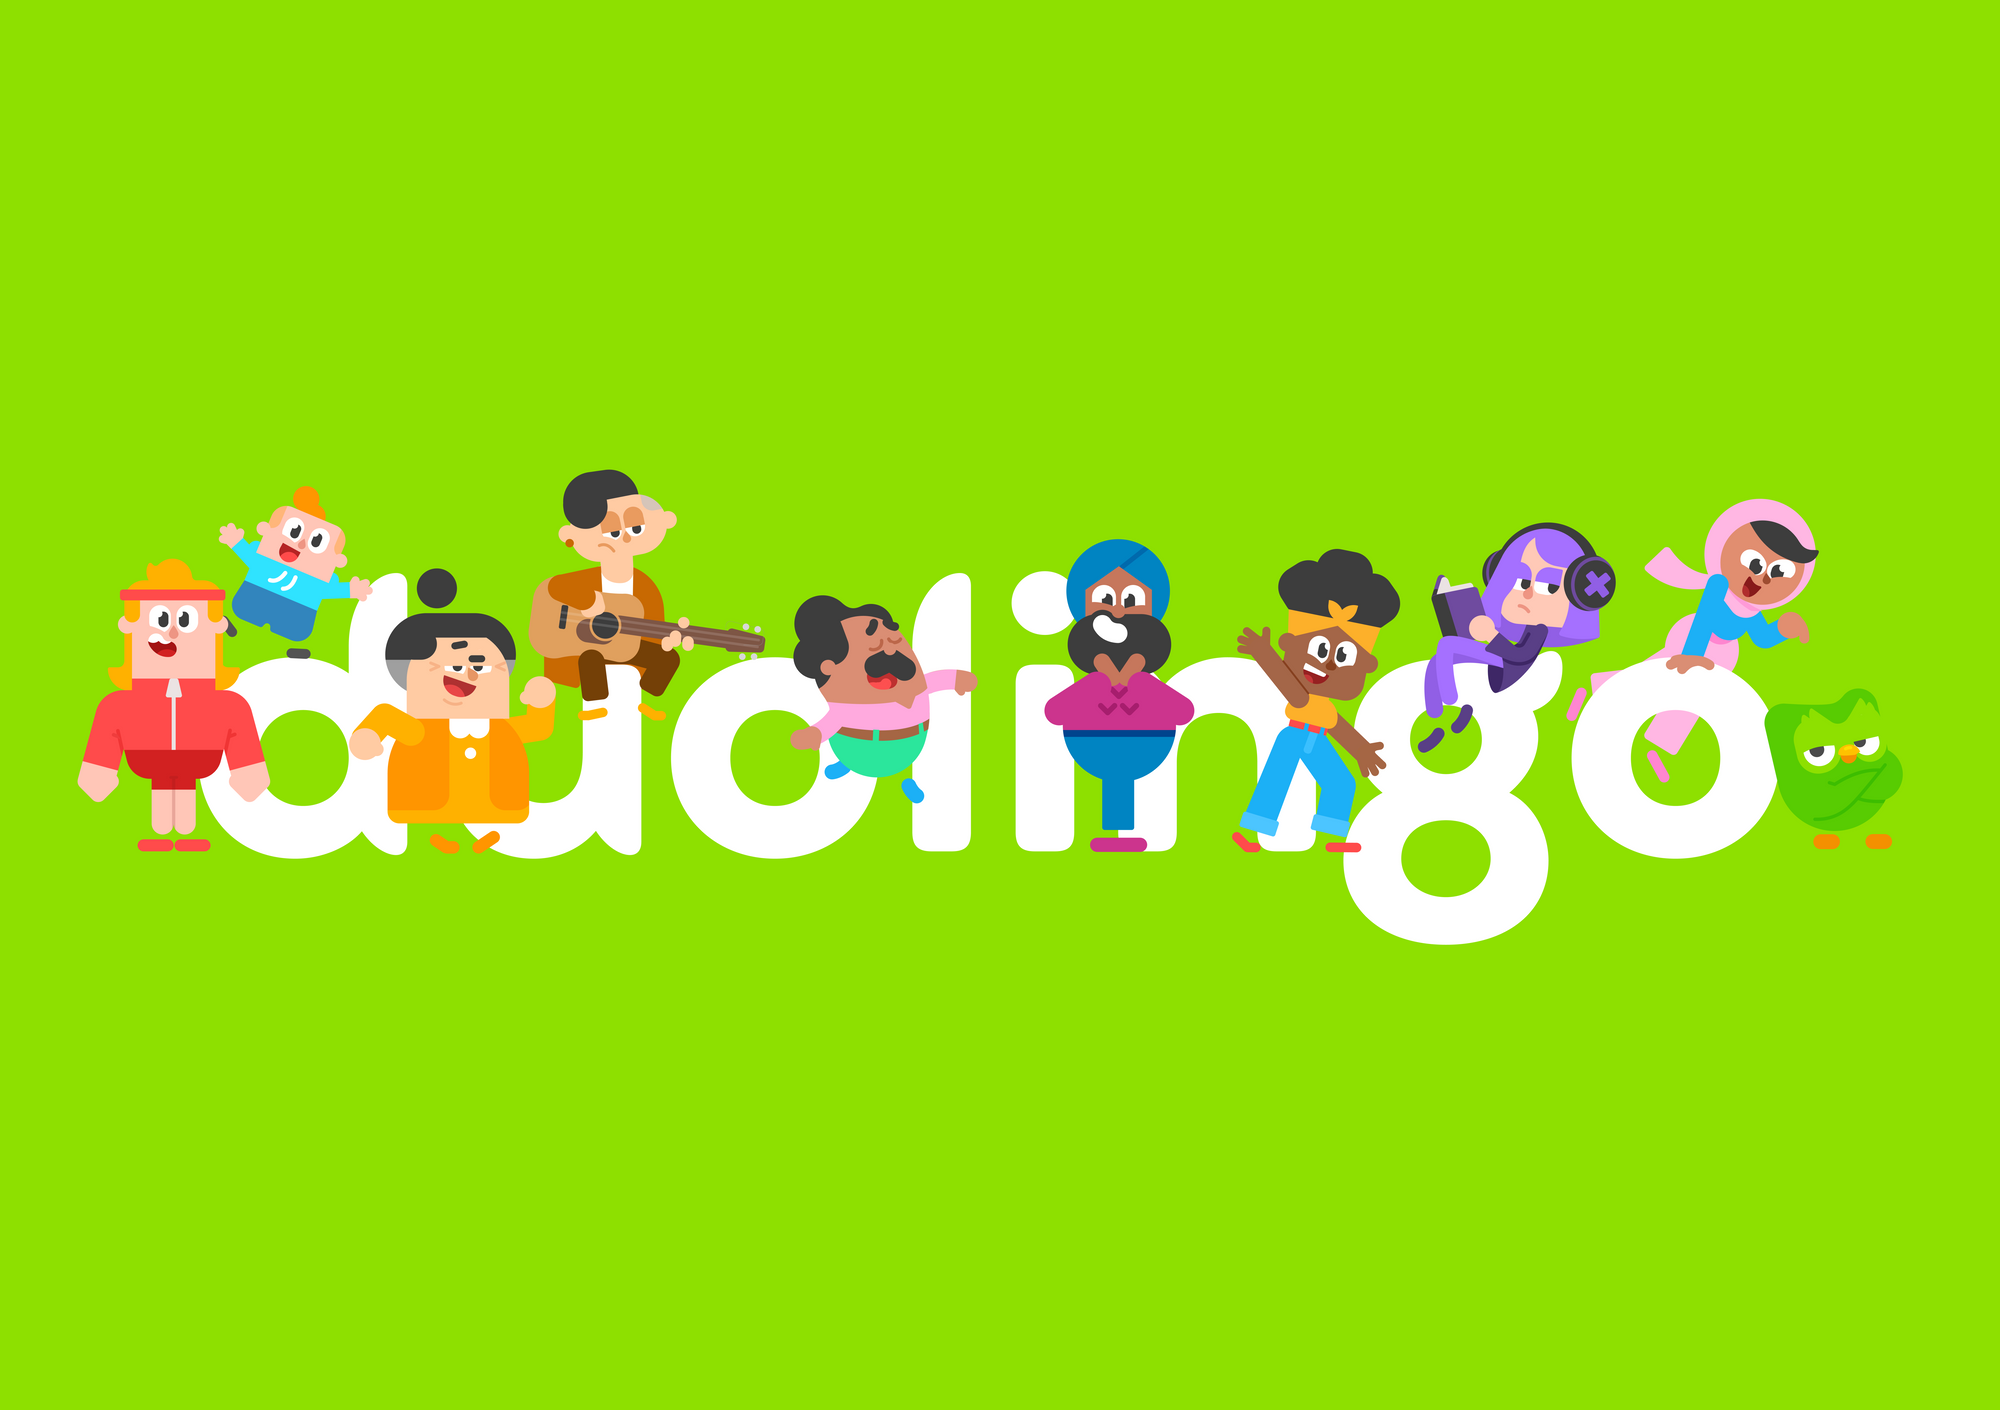 Duolingo: Đế chế tỷ đô thay đổi “cuộc chơi” học ngoại ngữ trực tuyến